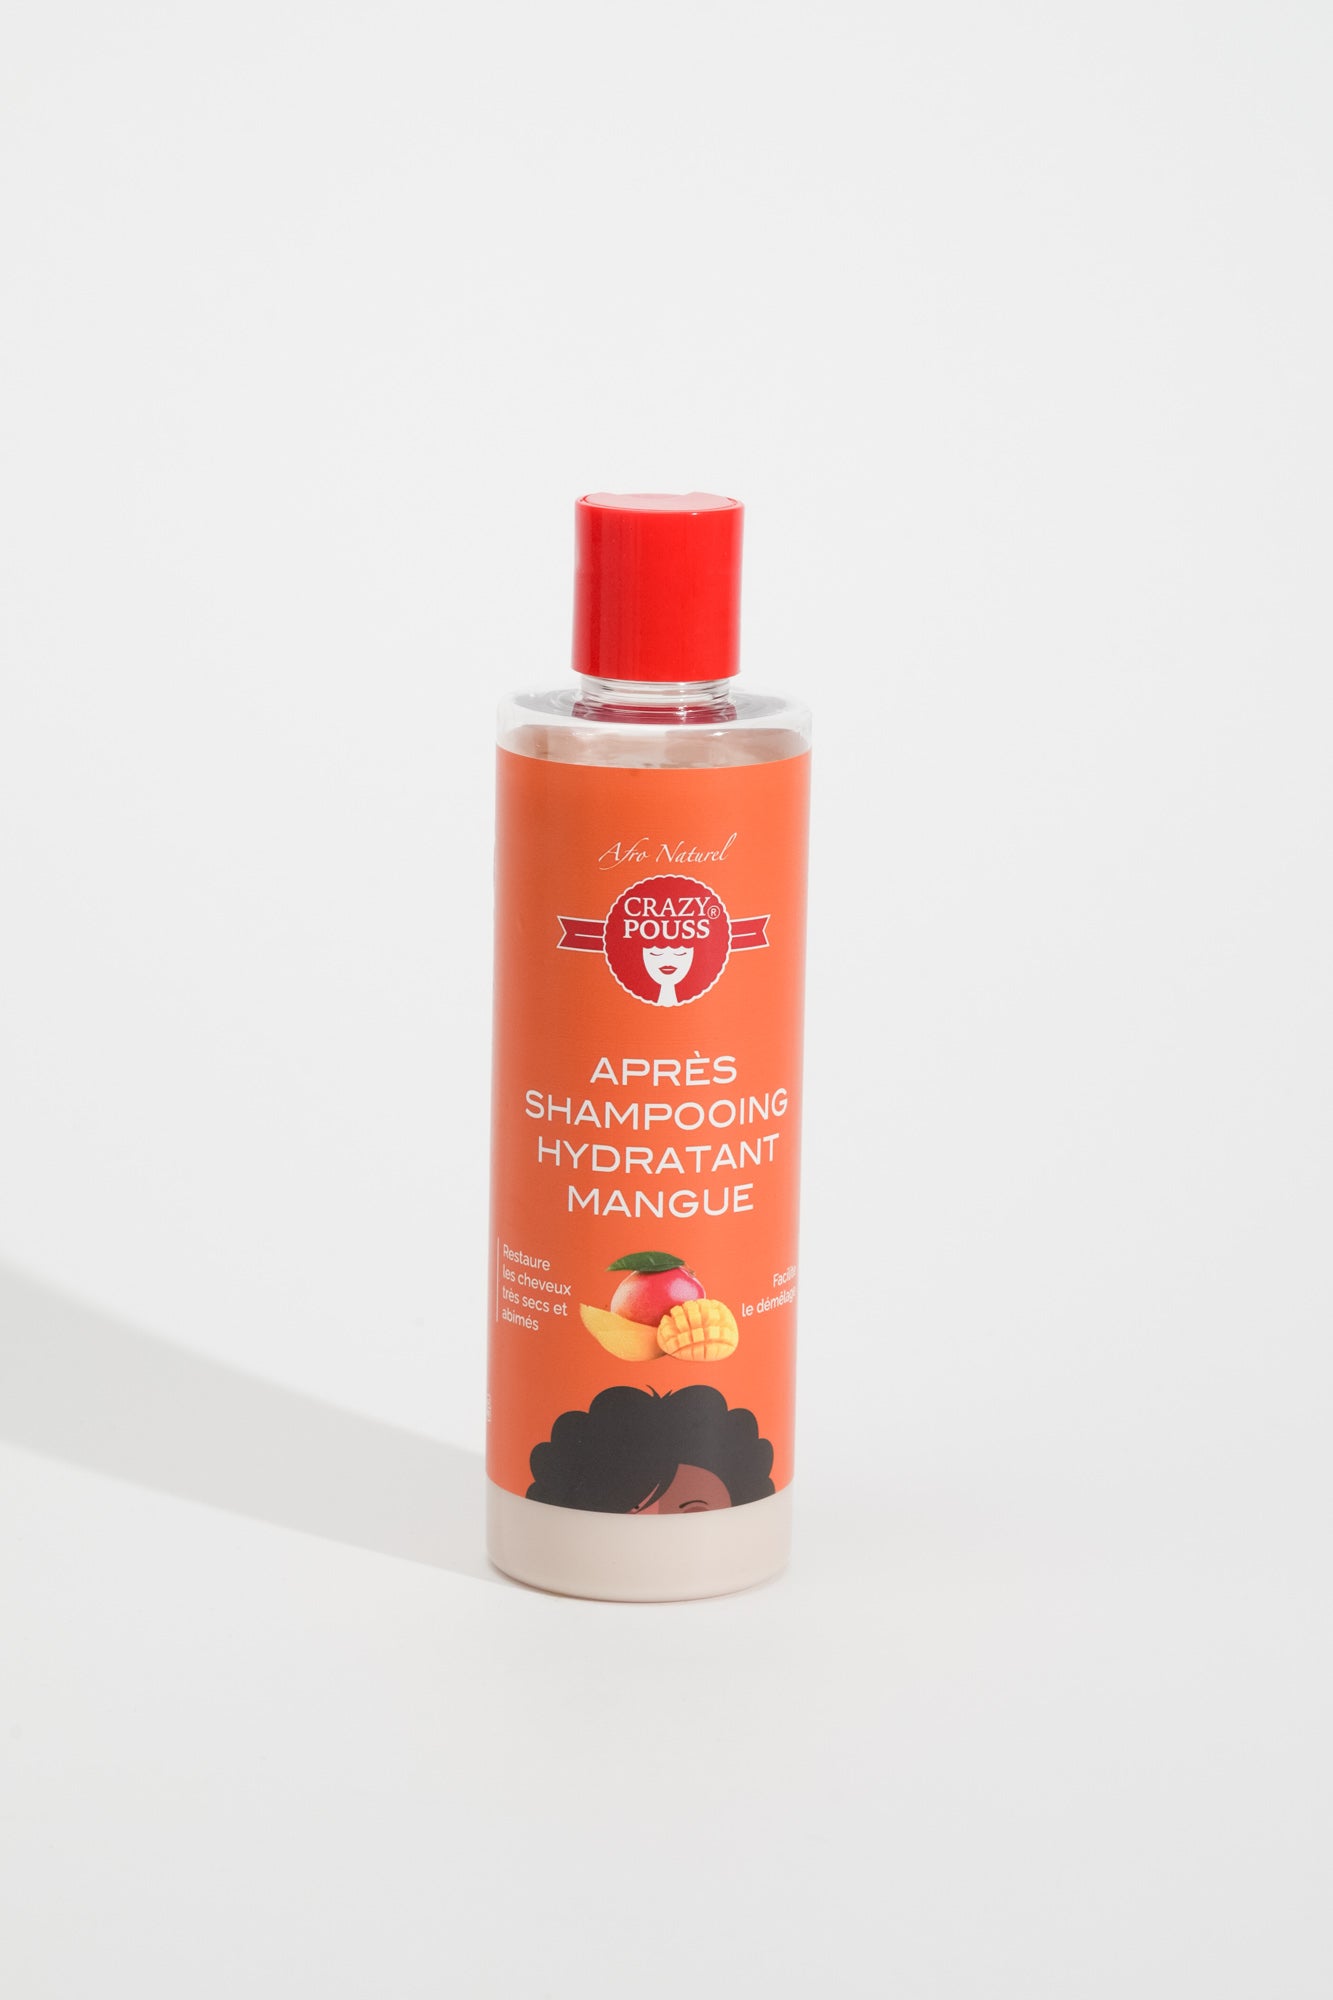 CRAZY POUSS - Gamme de shampoing et après-shampoing à la mangue - Soin capillaire qui hydrate, nourrit et fortifie vos cheveux